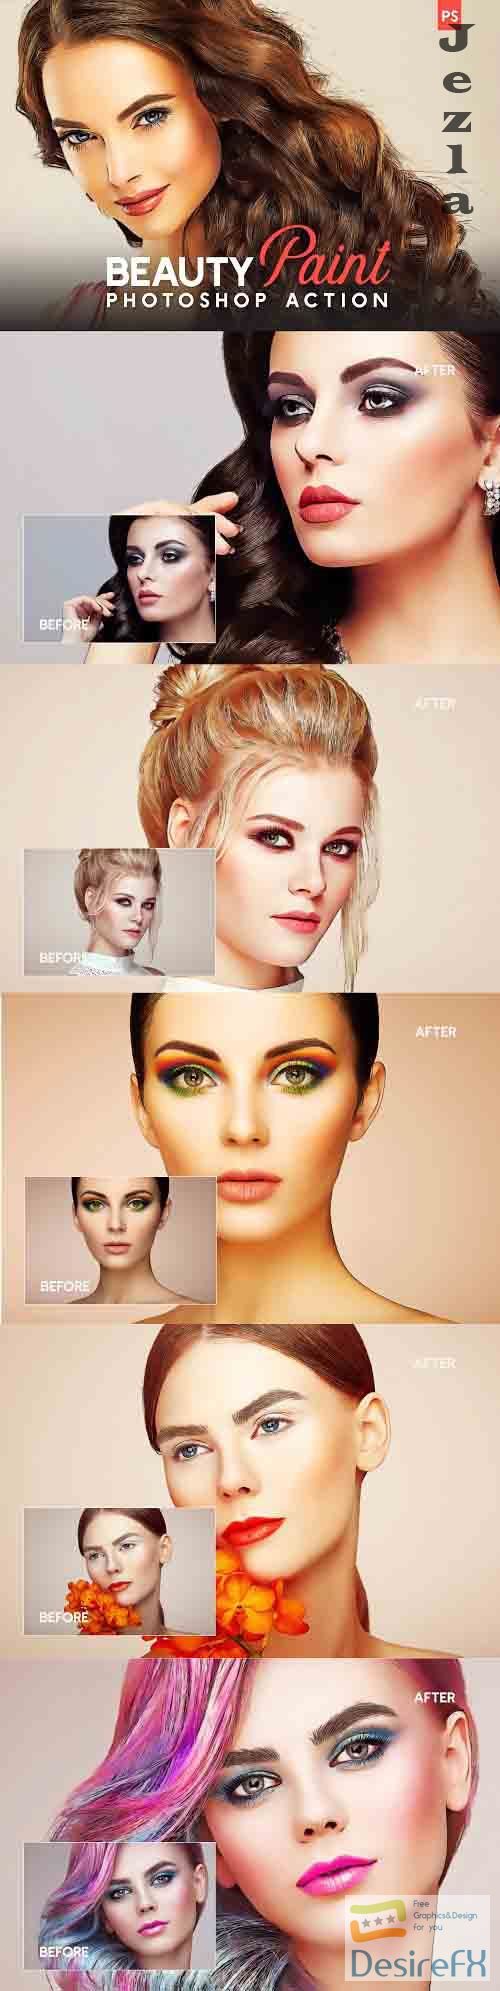 Beauty Paint Photoshop Action - 4795330